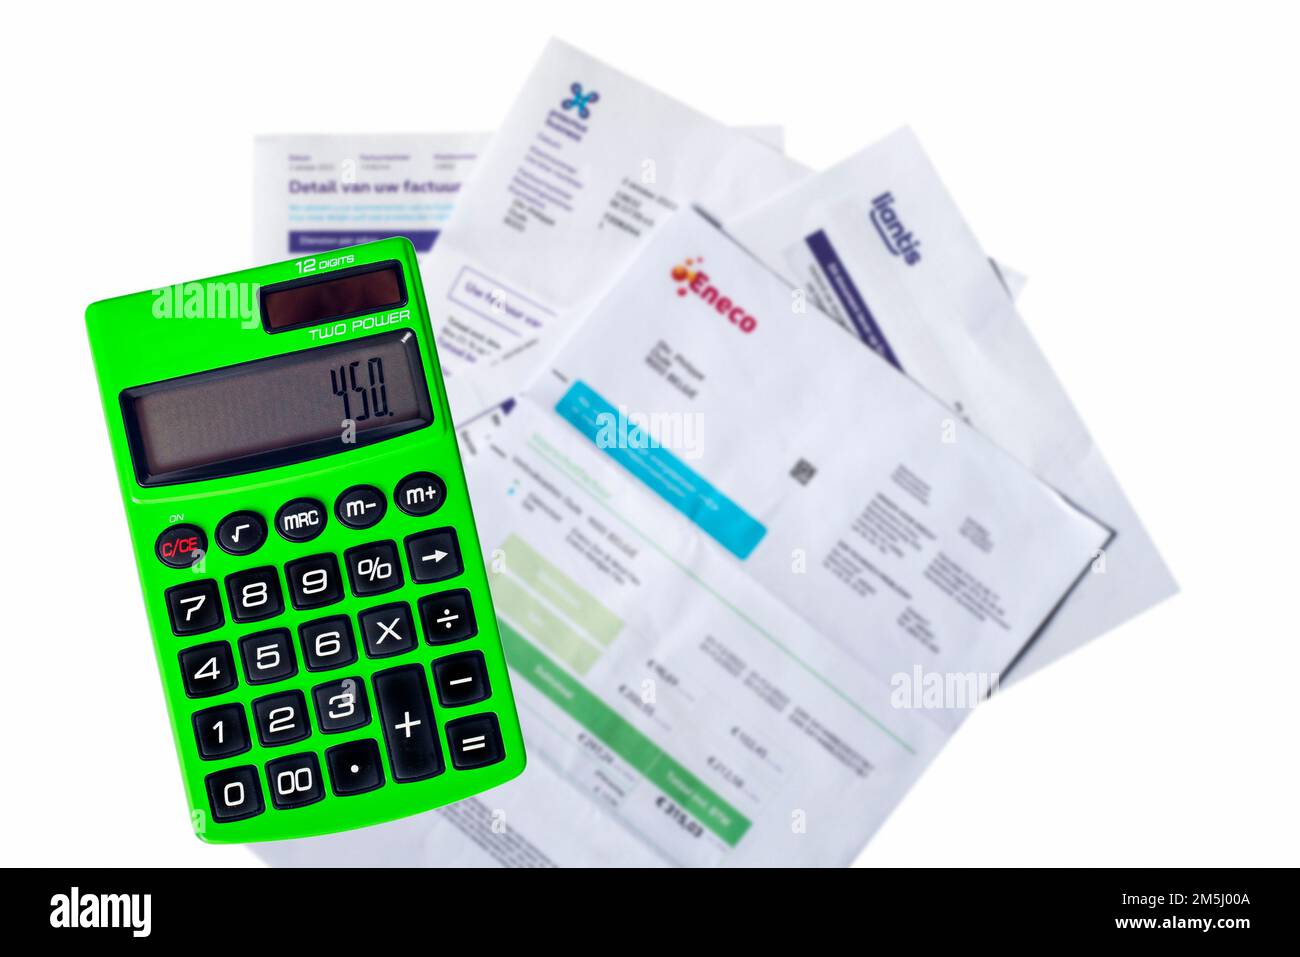 Calculadora de bolsillo verde y facturas / facturas de Eneco, proveedor de  gas natural y electricidad, Proximus y Liantis sobre fondo blanco  Fotografía de stock - Alamy